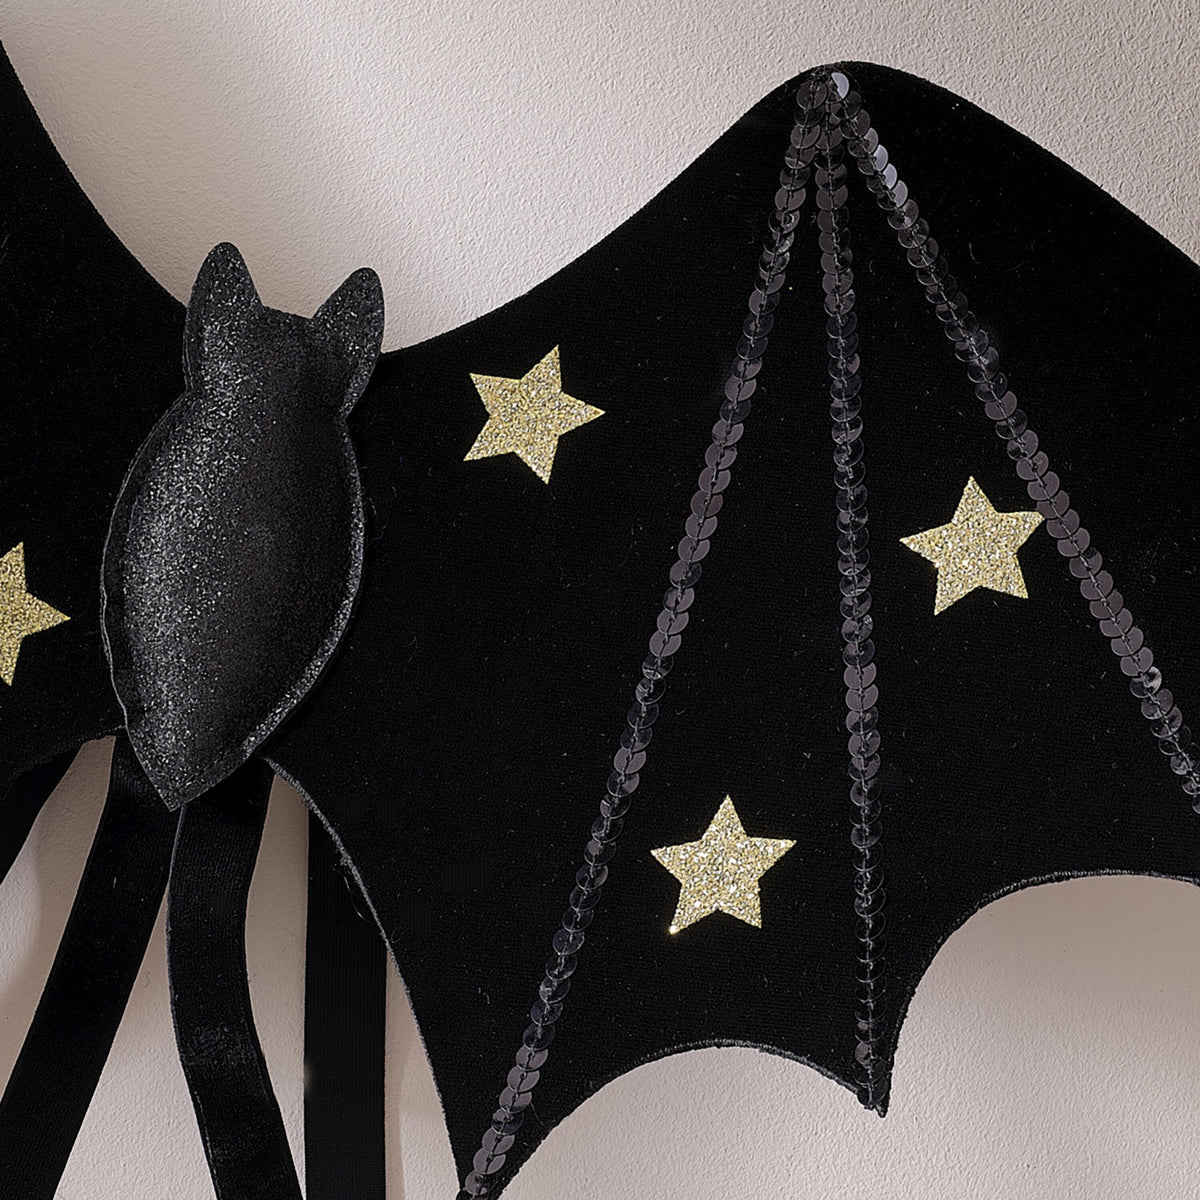 Capa Asas de Morcego Halloween - Partyval